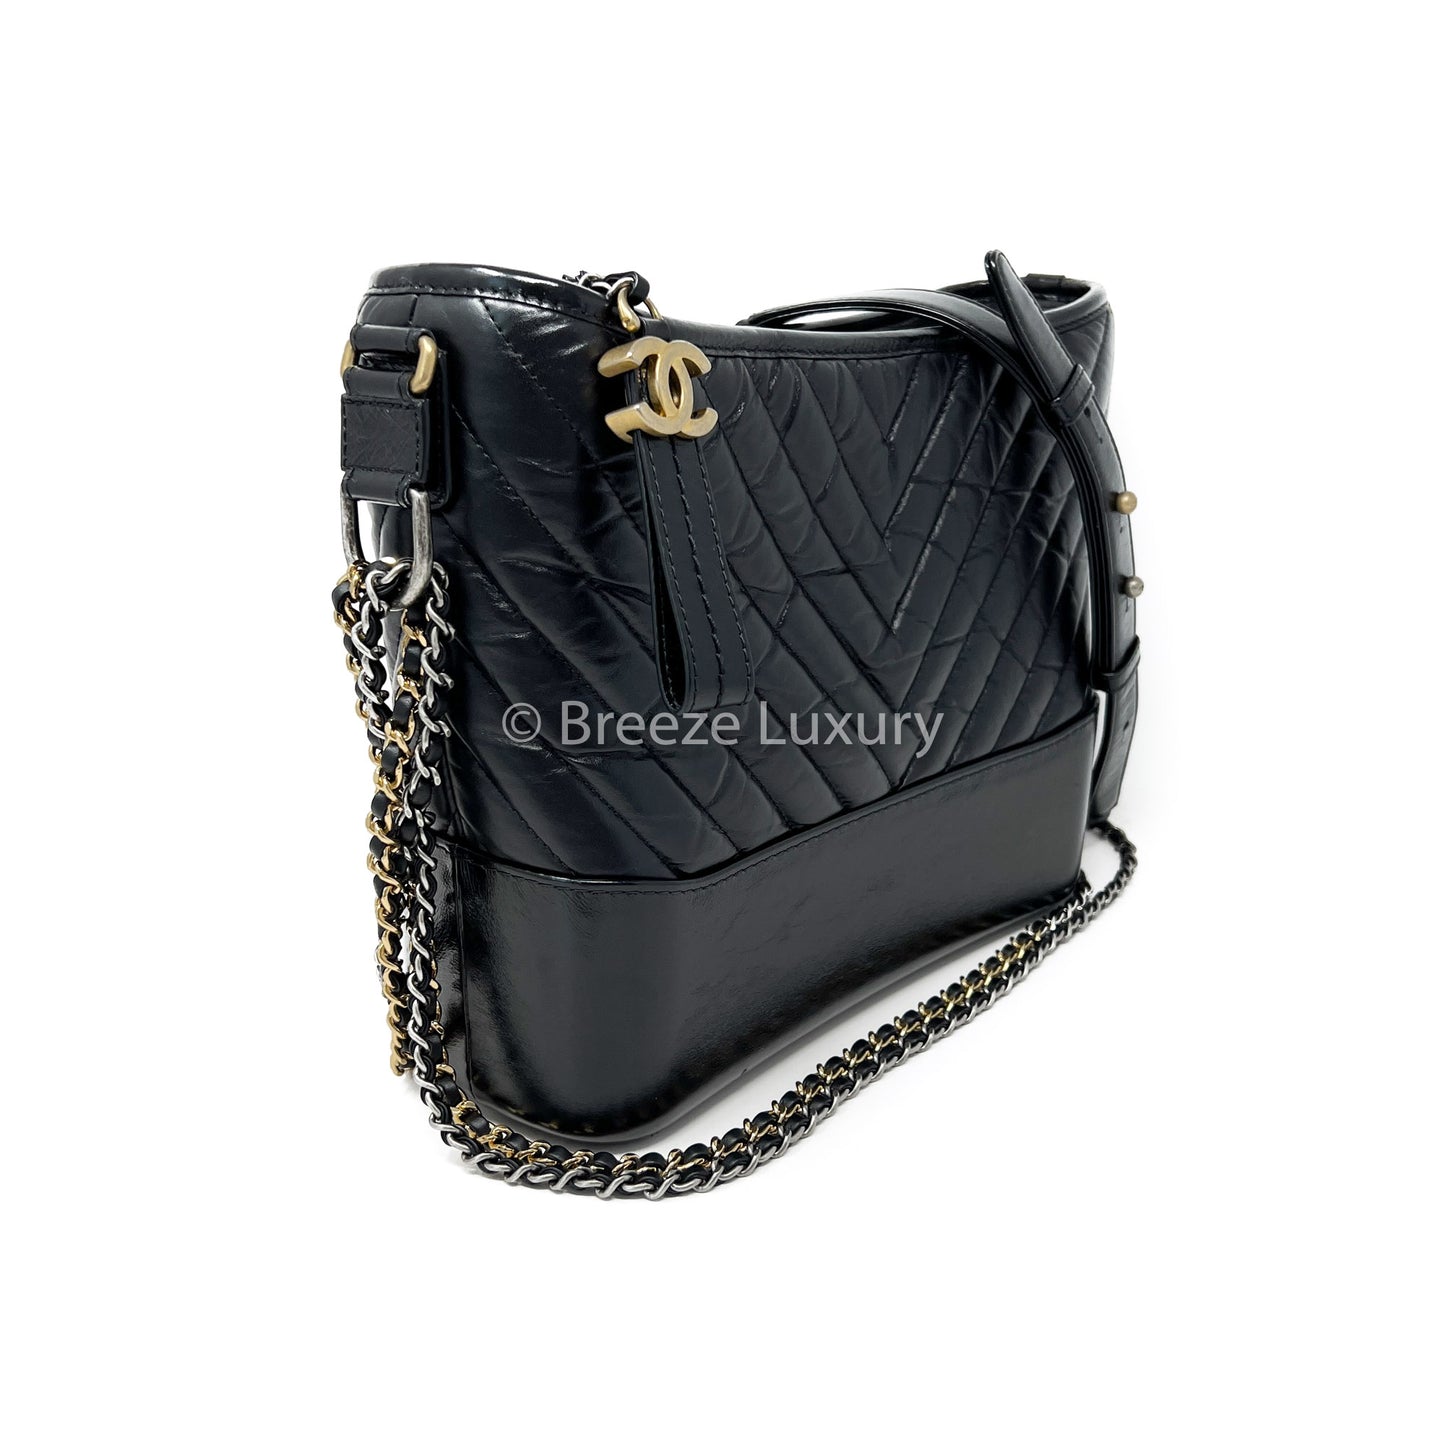 Chanel's Chevron Gabrielle Aged Calfskin Medium Hobo Bag